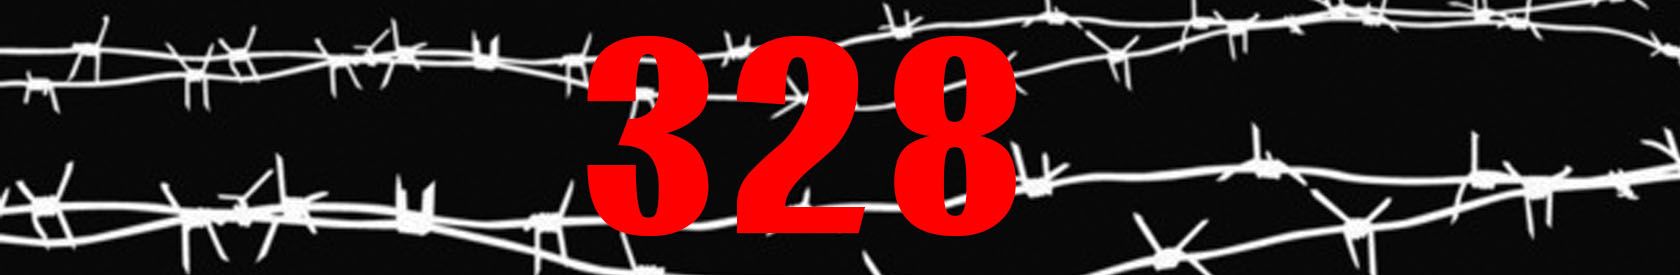 Не допустить плачевных последствий перегибов судебной системы: родные «детей-328» внесли предложения по амнистии-2020